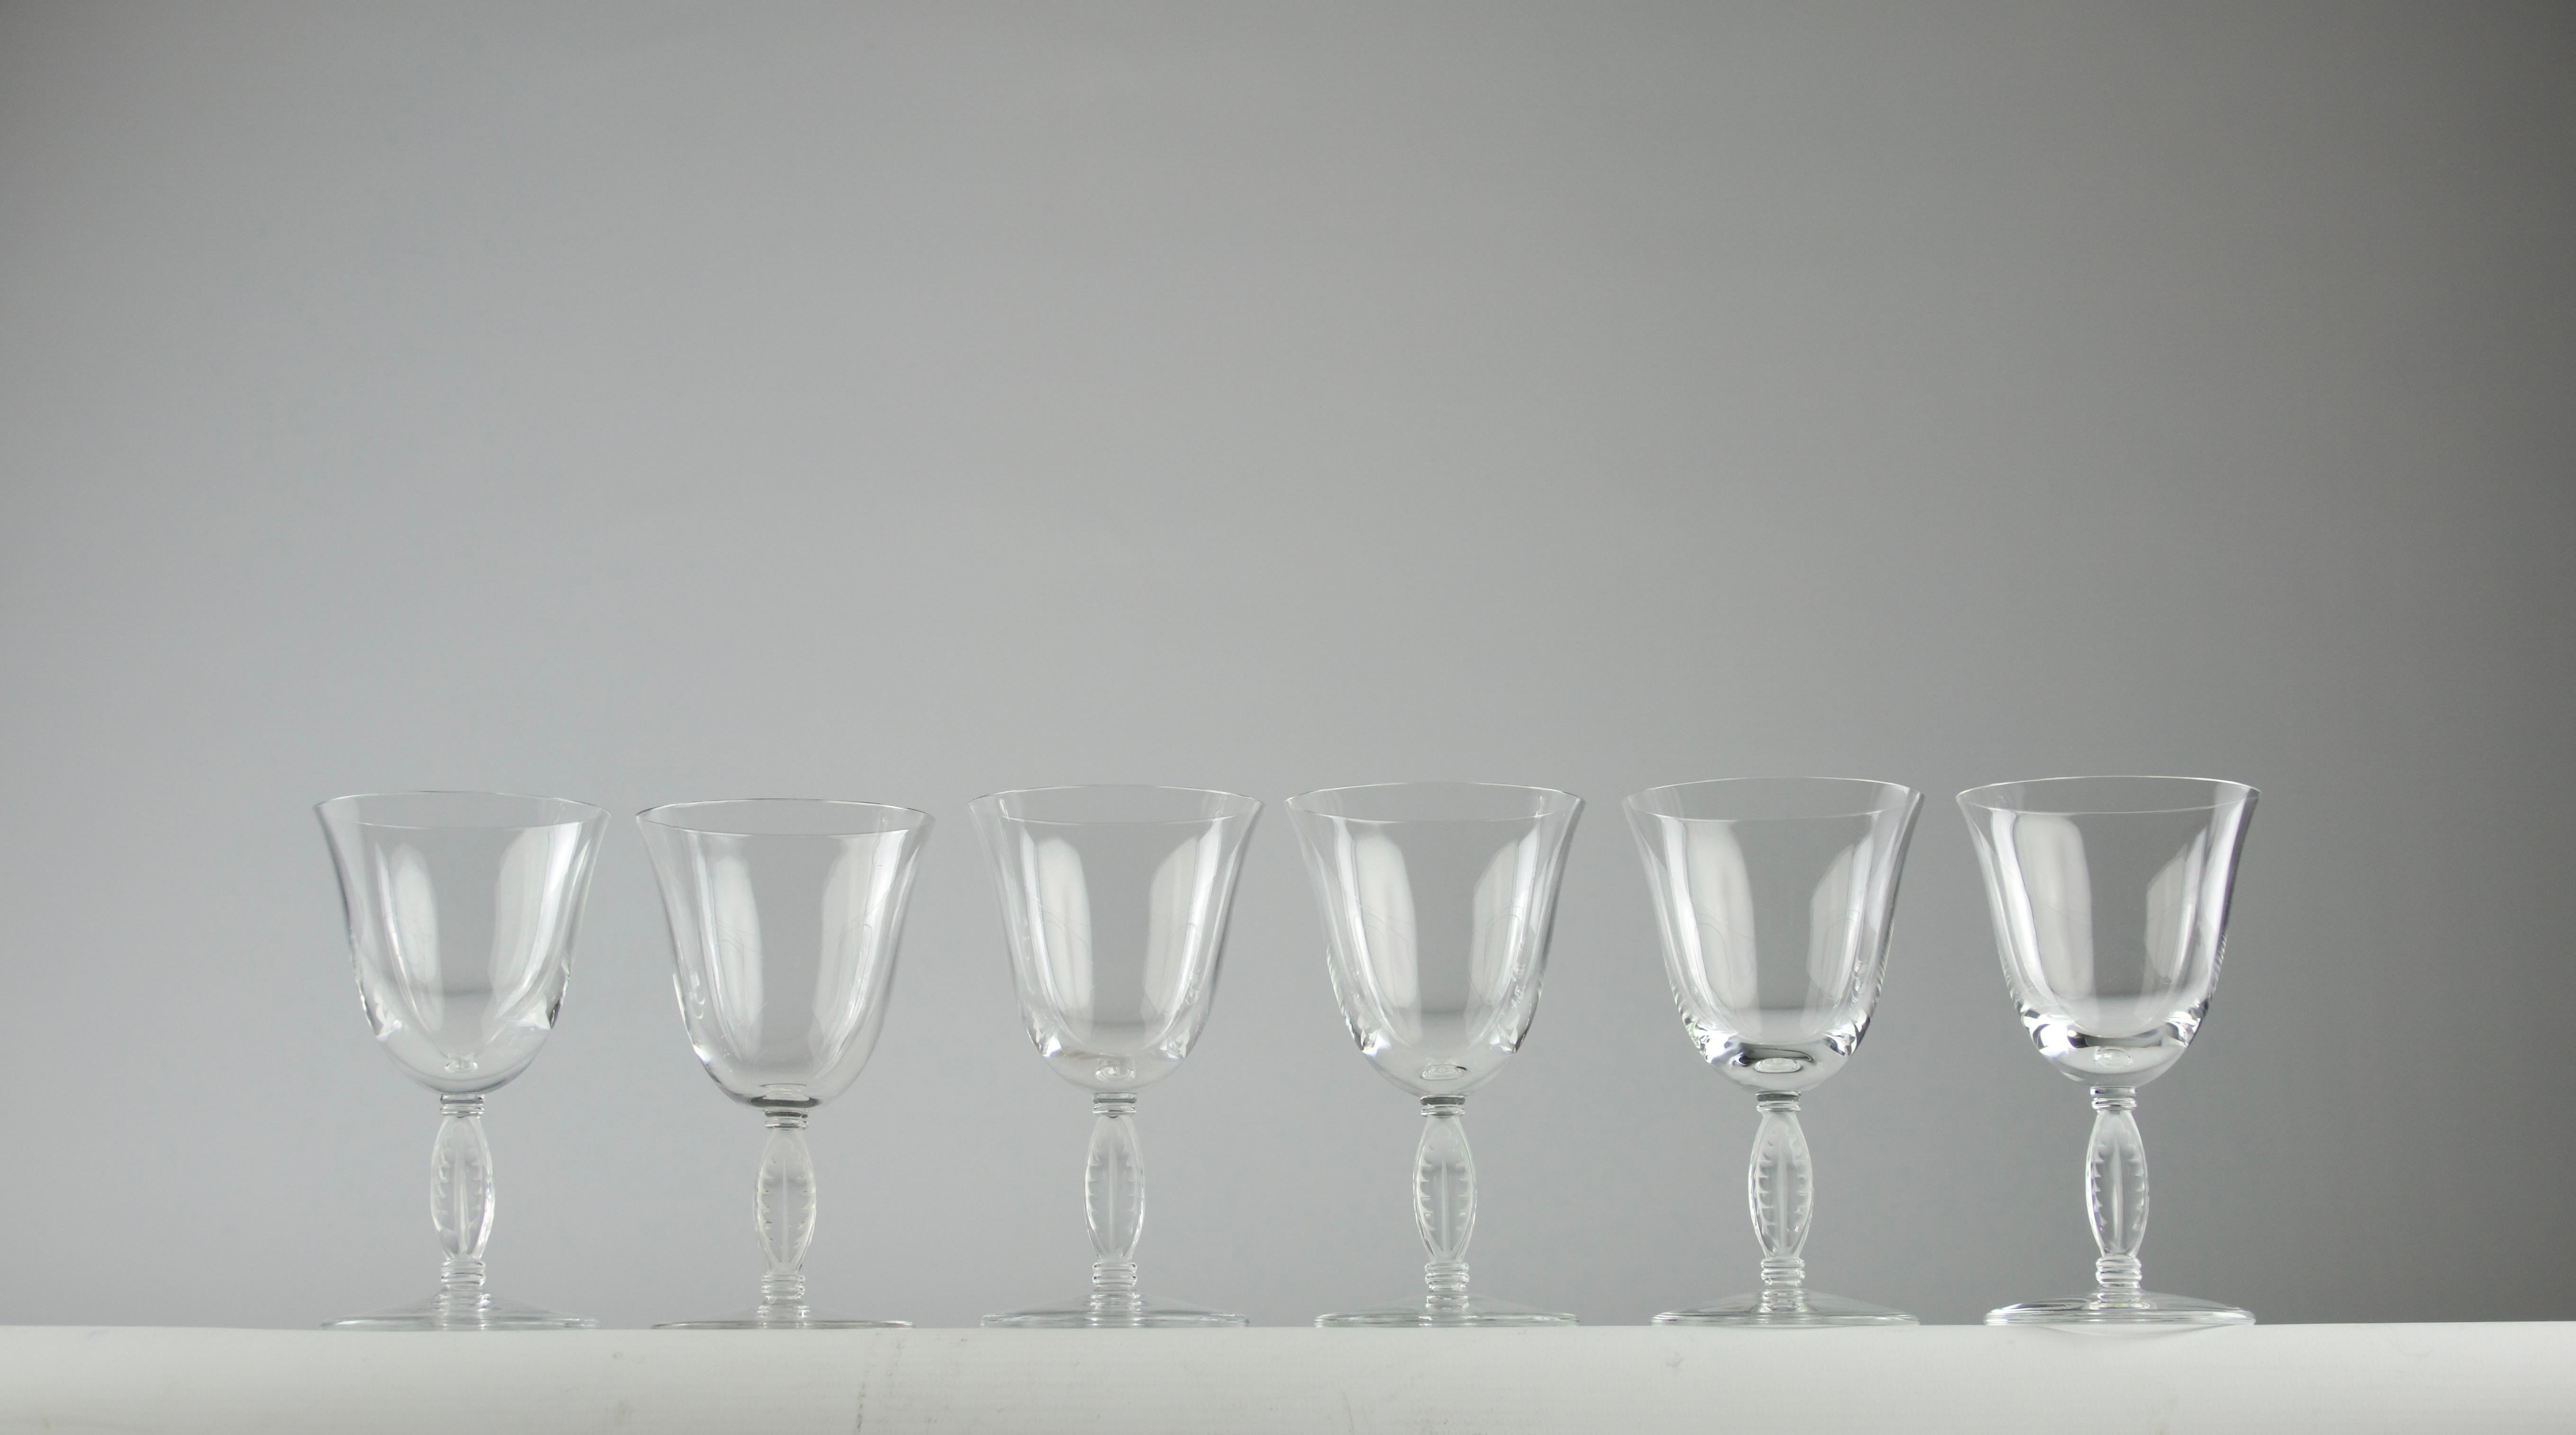 Magnifique ensemble de six verres à vin blanc Lalique Fontainebleau. D'autres verres à vin de la même collection sont disponibles dans la boutique.

En très bon état.

Dimensions en cm ( H x D ) : 12.4 x 7

Expédition sécurisée.

Conçu pour la